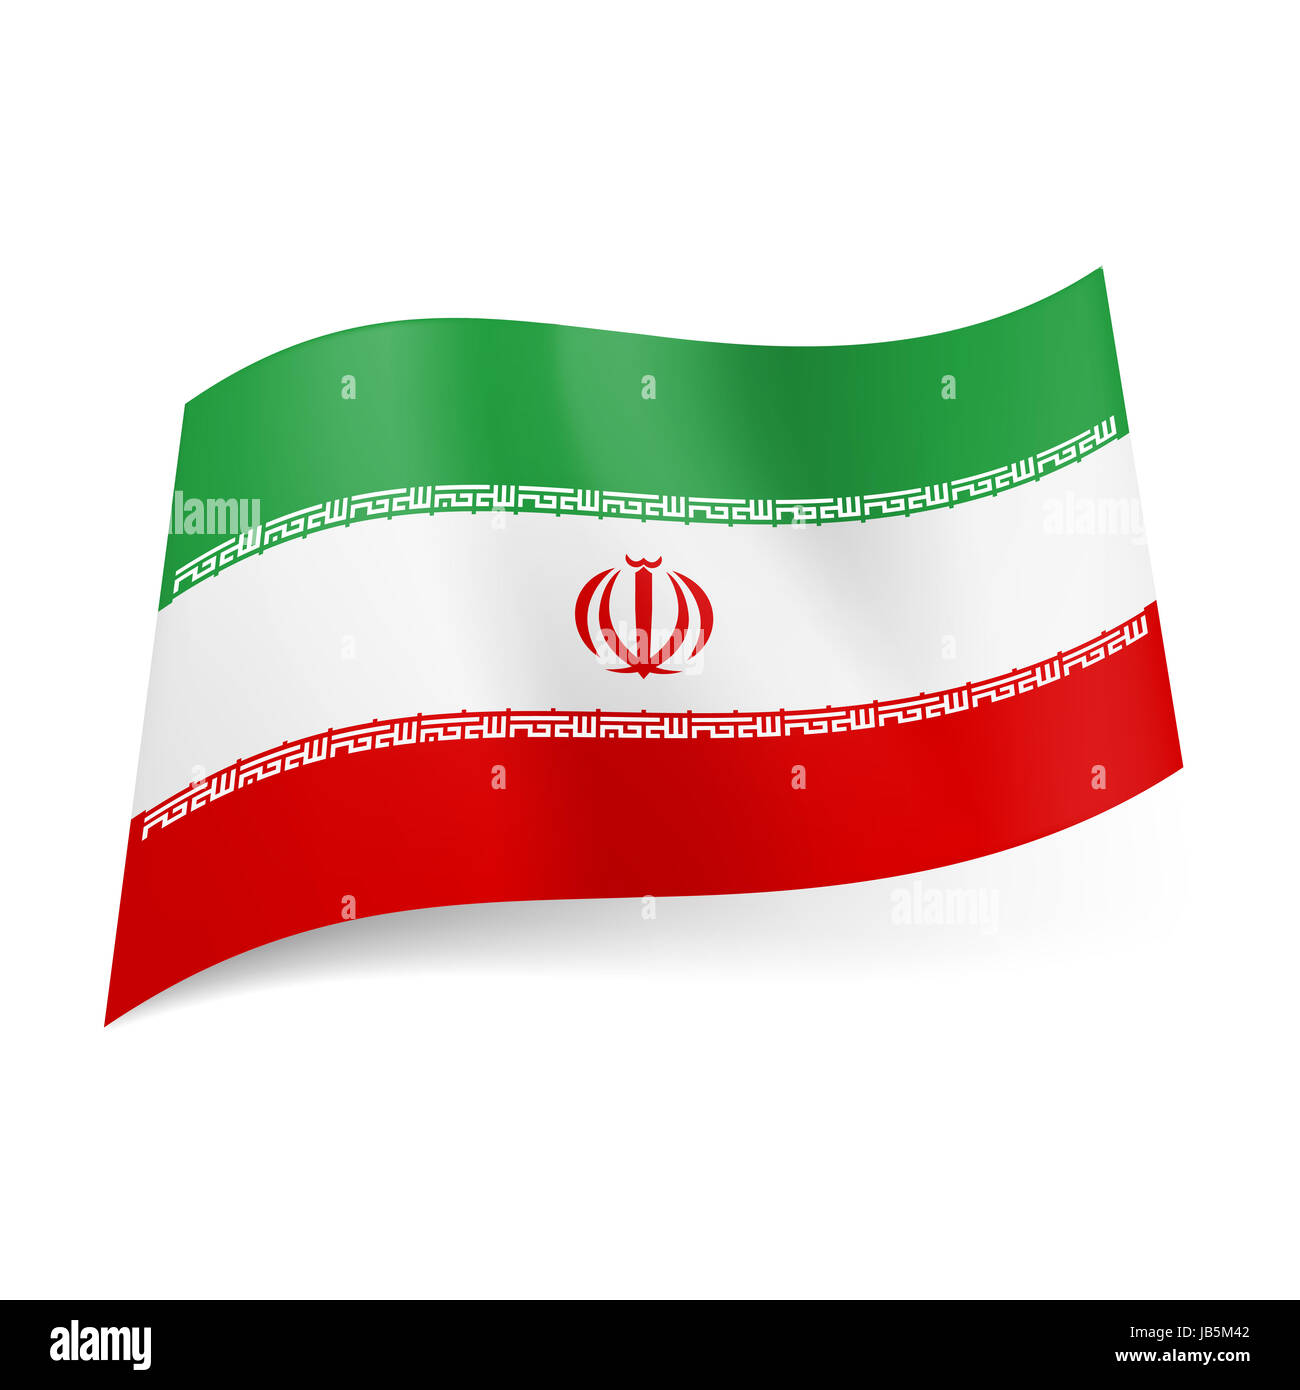 Bandiera nazionale dell'Iran: verde, bianco e rosso strisce orizzontali con  stemma sulla fascia centrale Foto stock - Alamy